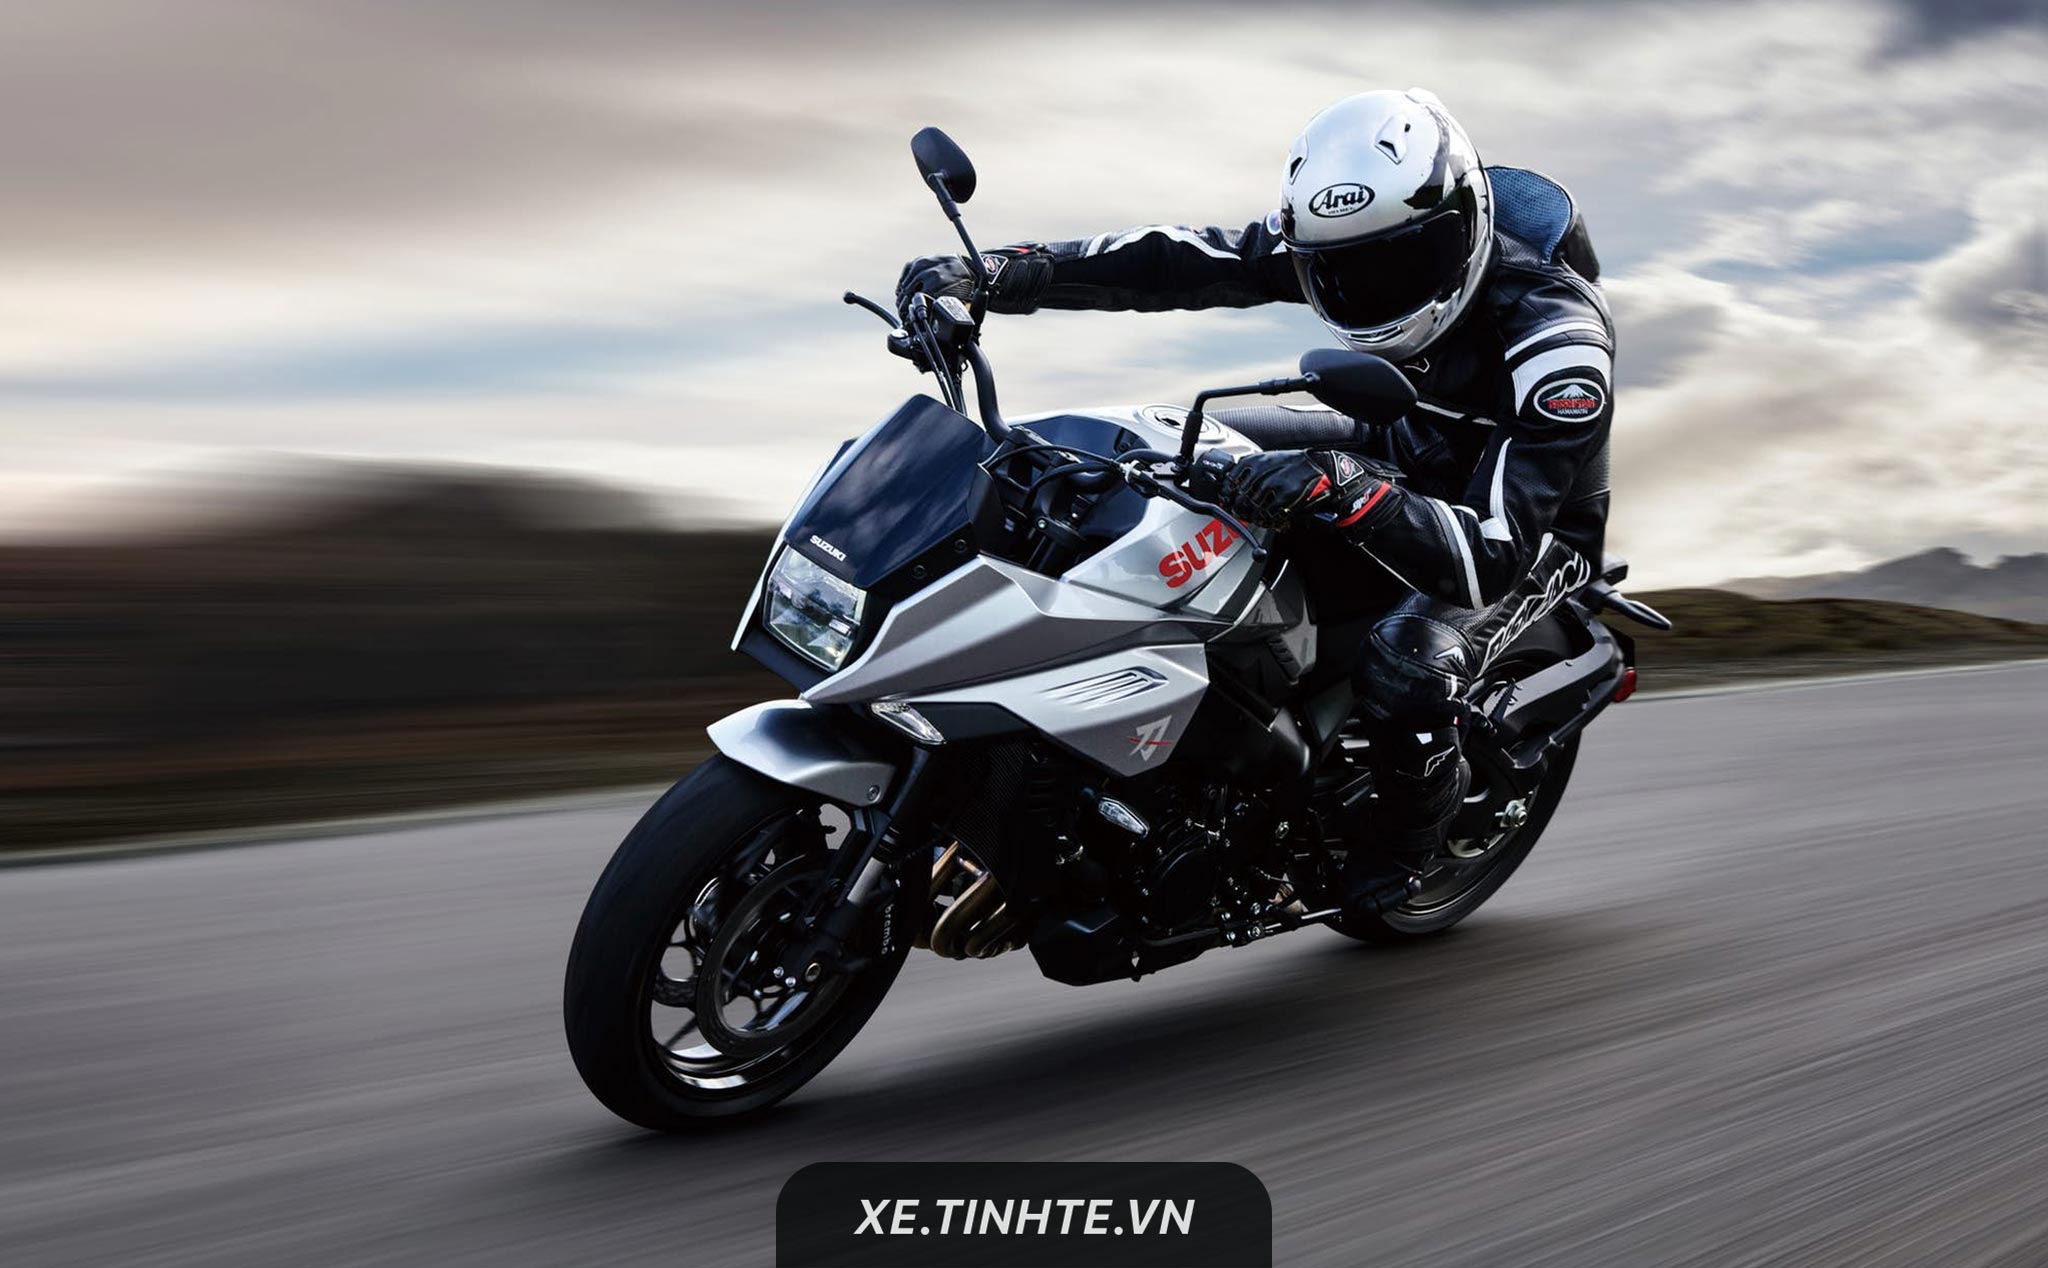 Suzuki Katana 2019 chính thức ra mắt - sportbike 1.000cc, thiết kế hầm hố, chưa rõ giá bán